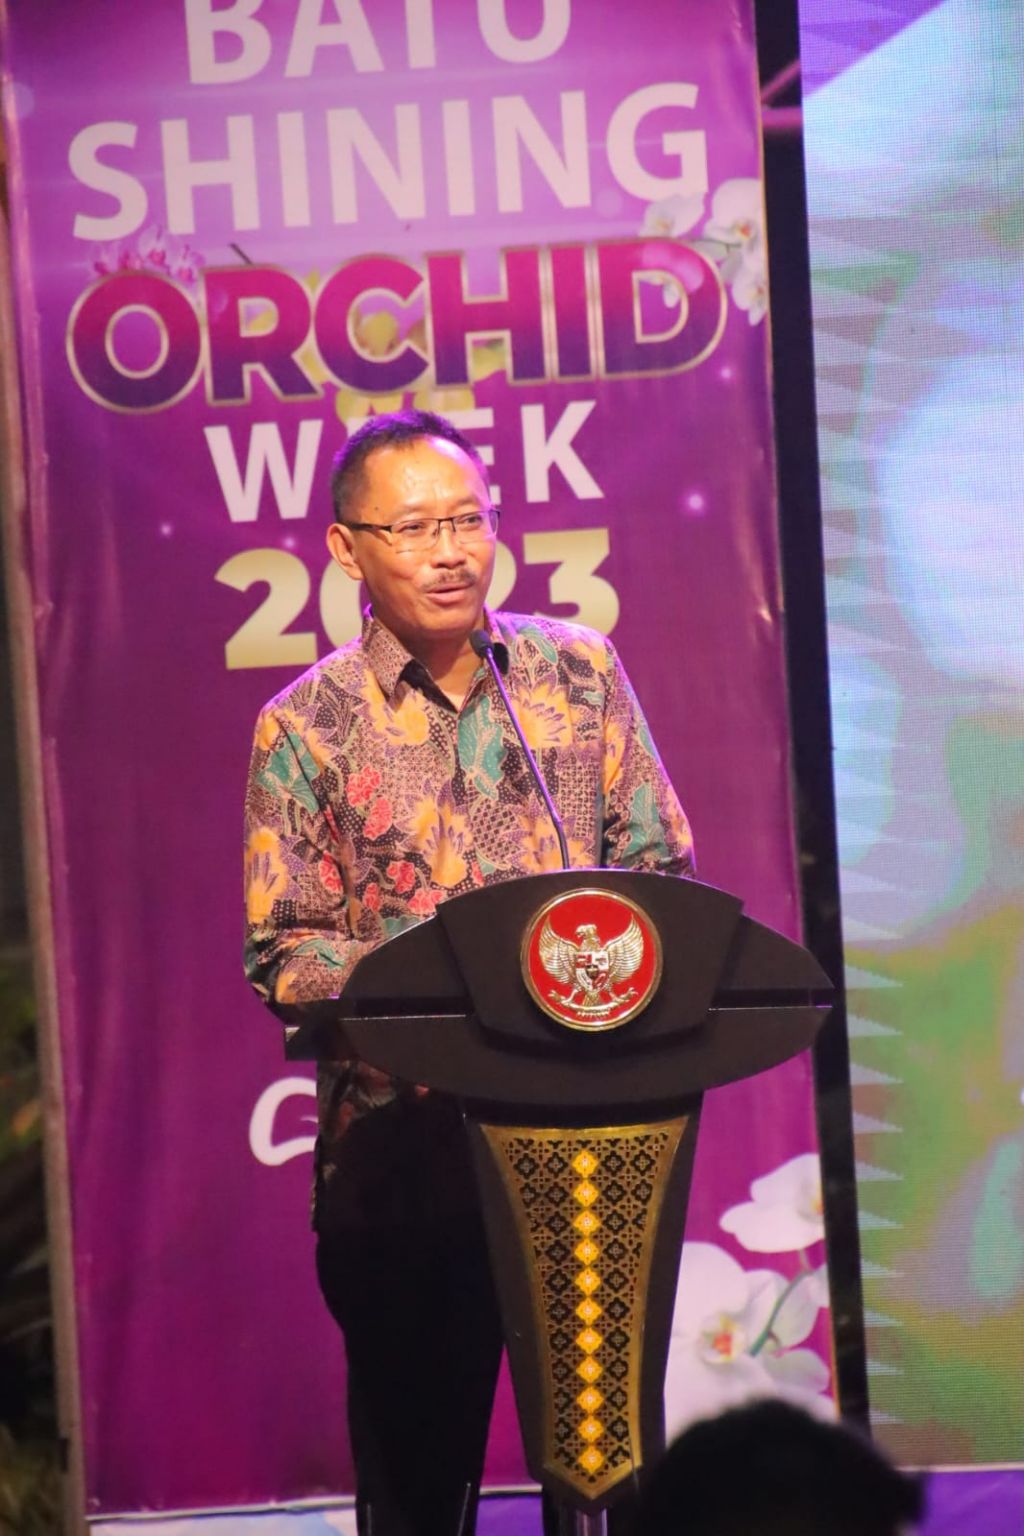 Kepala Dinas Pertanian Kota Batu, Heru Yulianto saat memberikan sambutan pada Batu Shining Orchids Week 2023